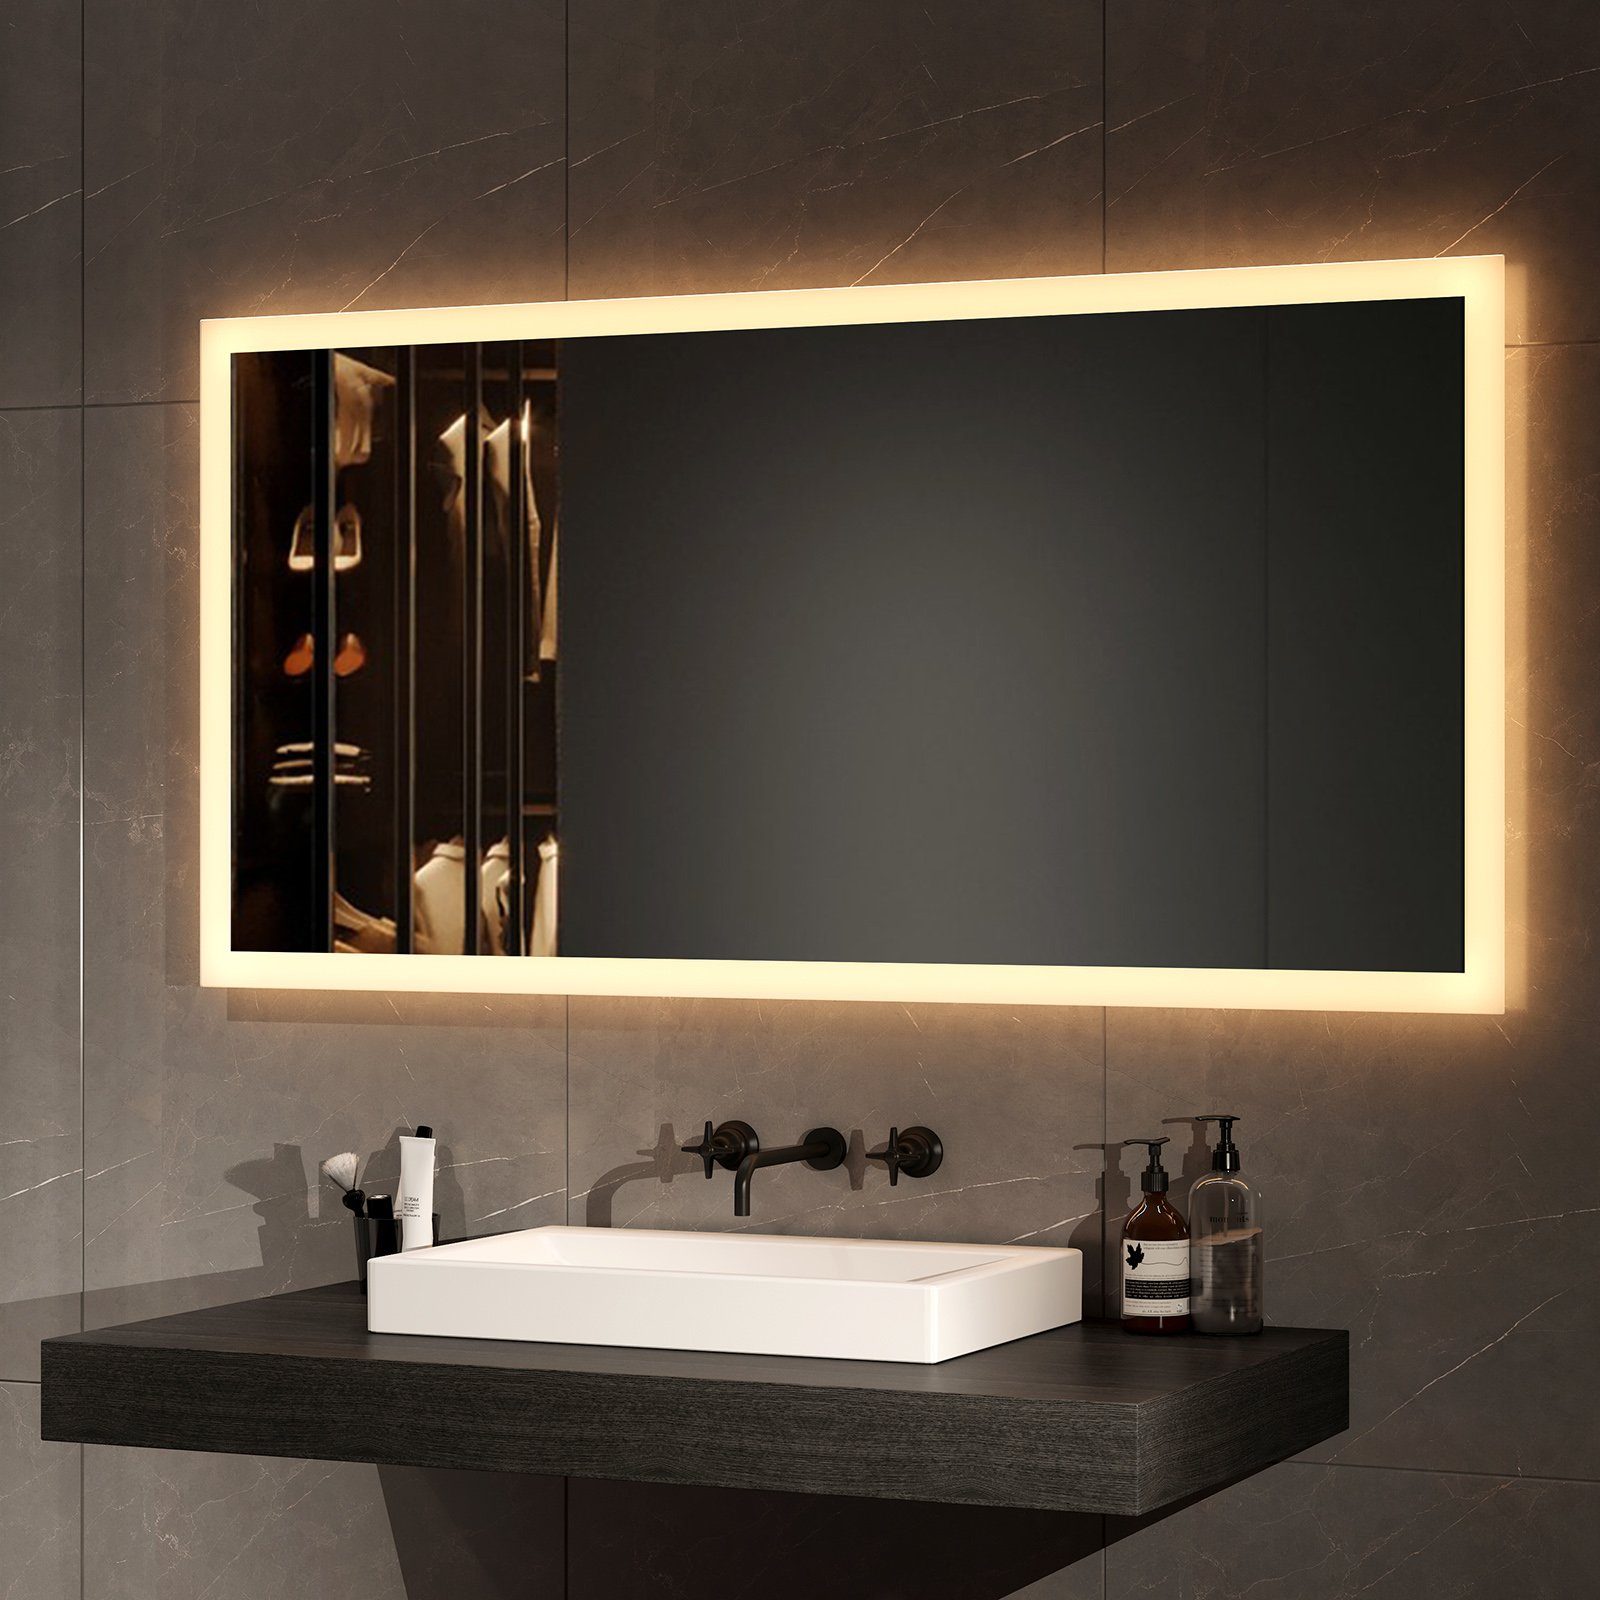 EMKE Badspiegel Badezimmerspiegel LED Badspiegel mit beleuchtung Wandspiegel (Wandschalter, Vertikal und Horizontal möglich), mit Warmweiß Licht 3000K IP44